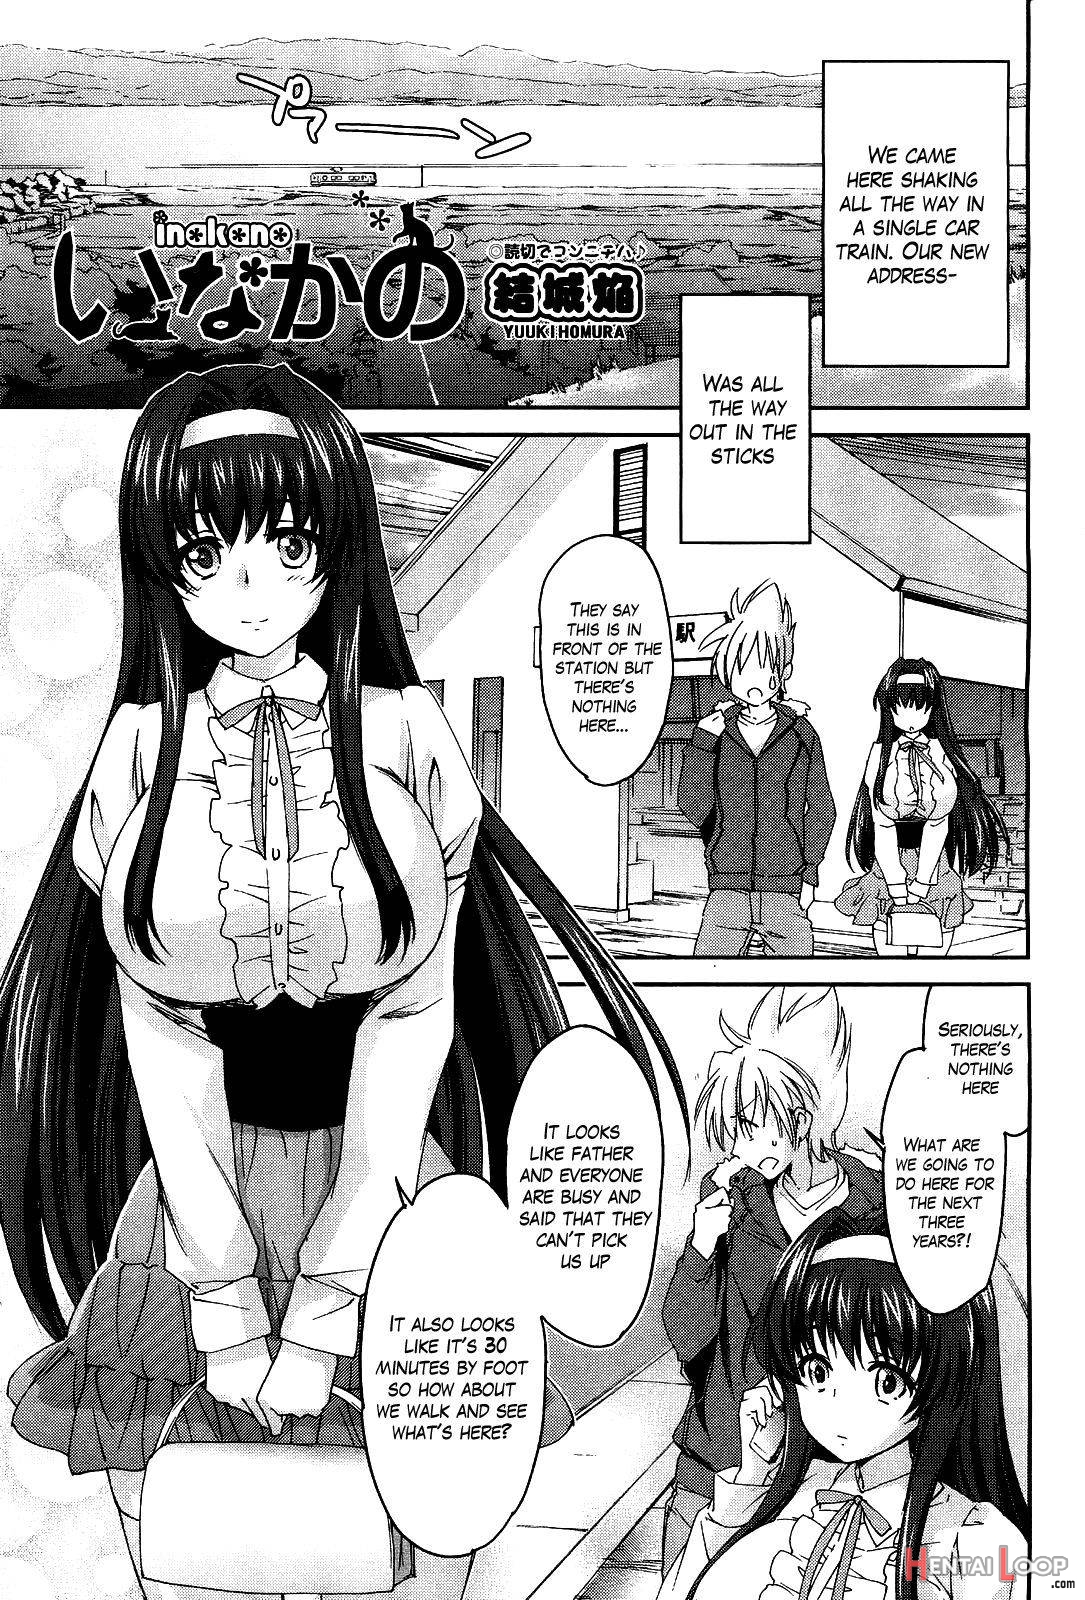 Inakano page 1